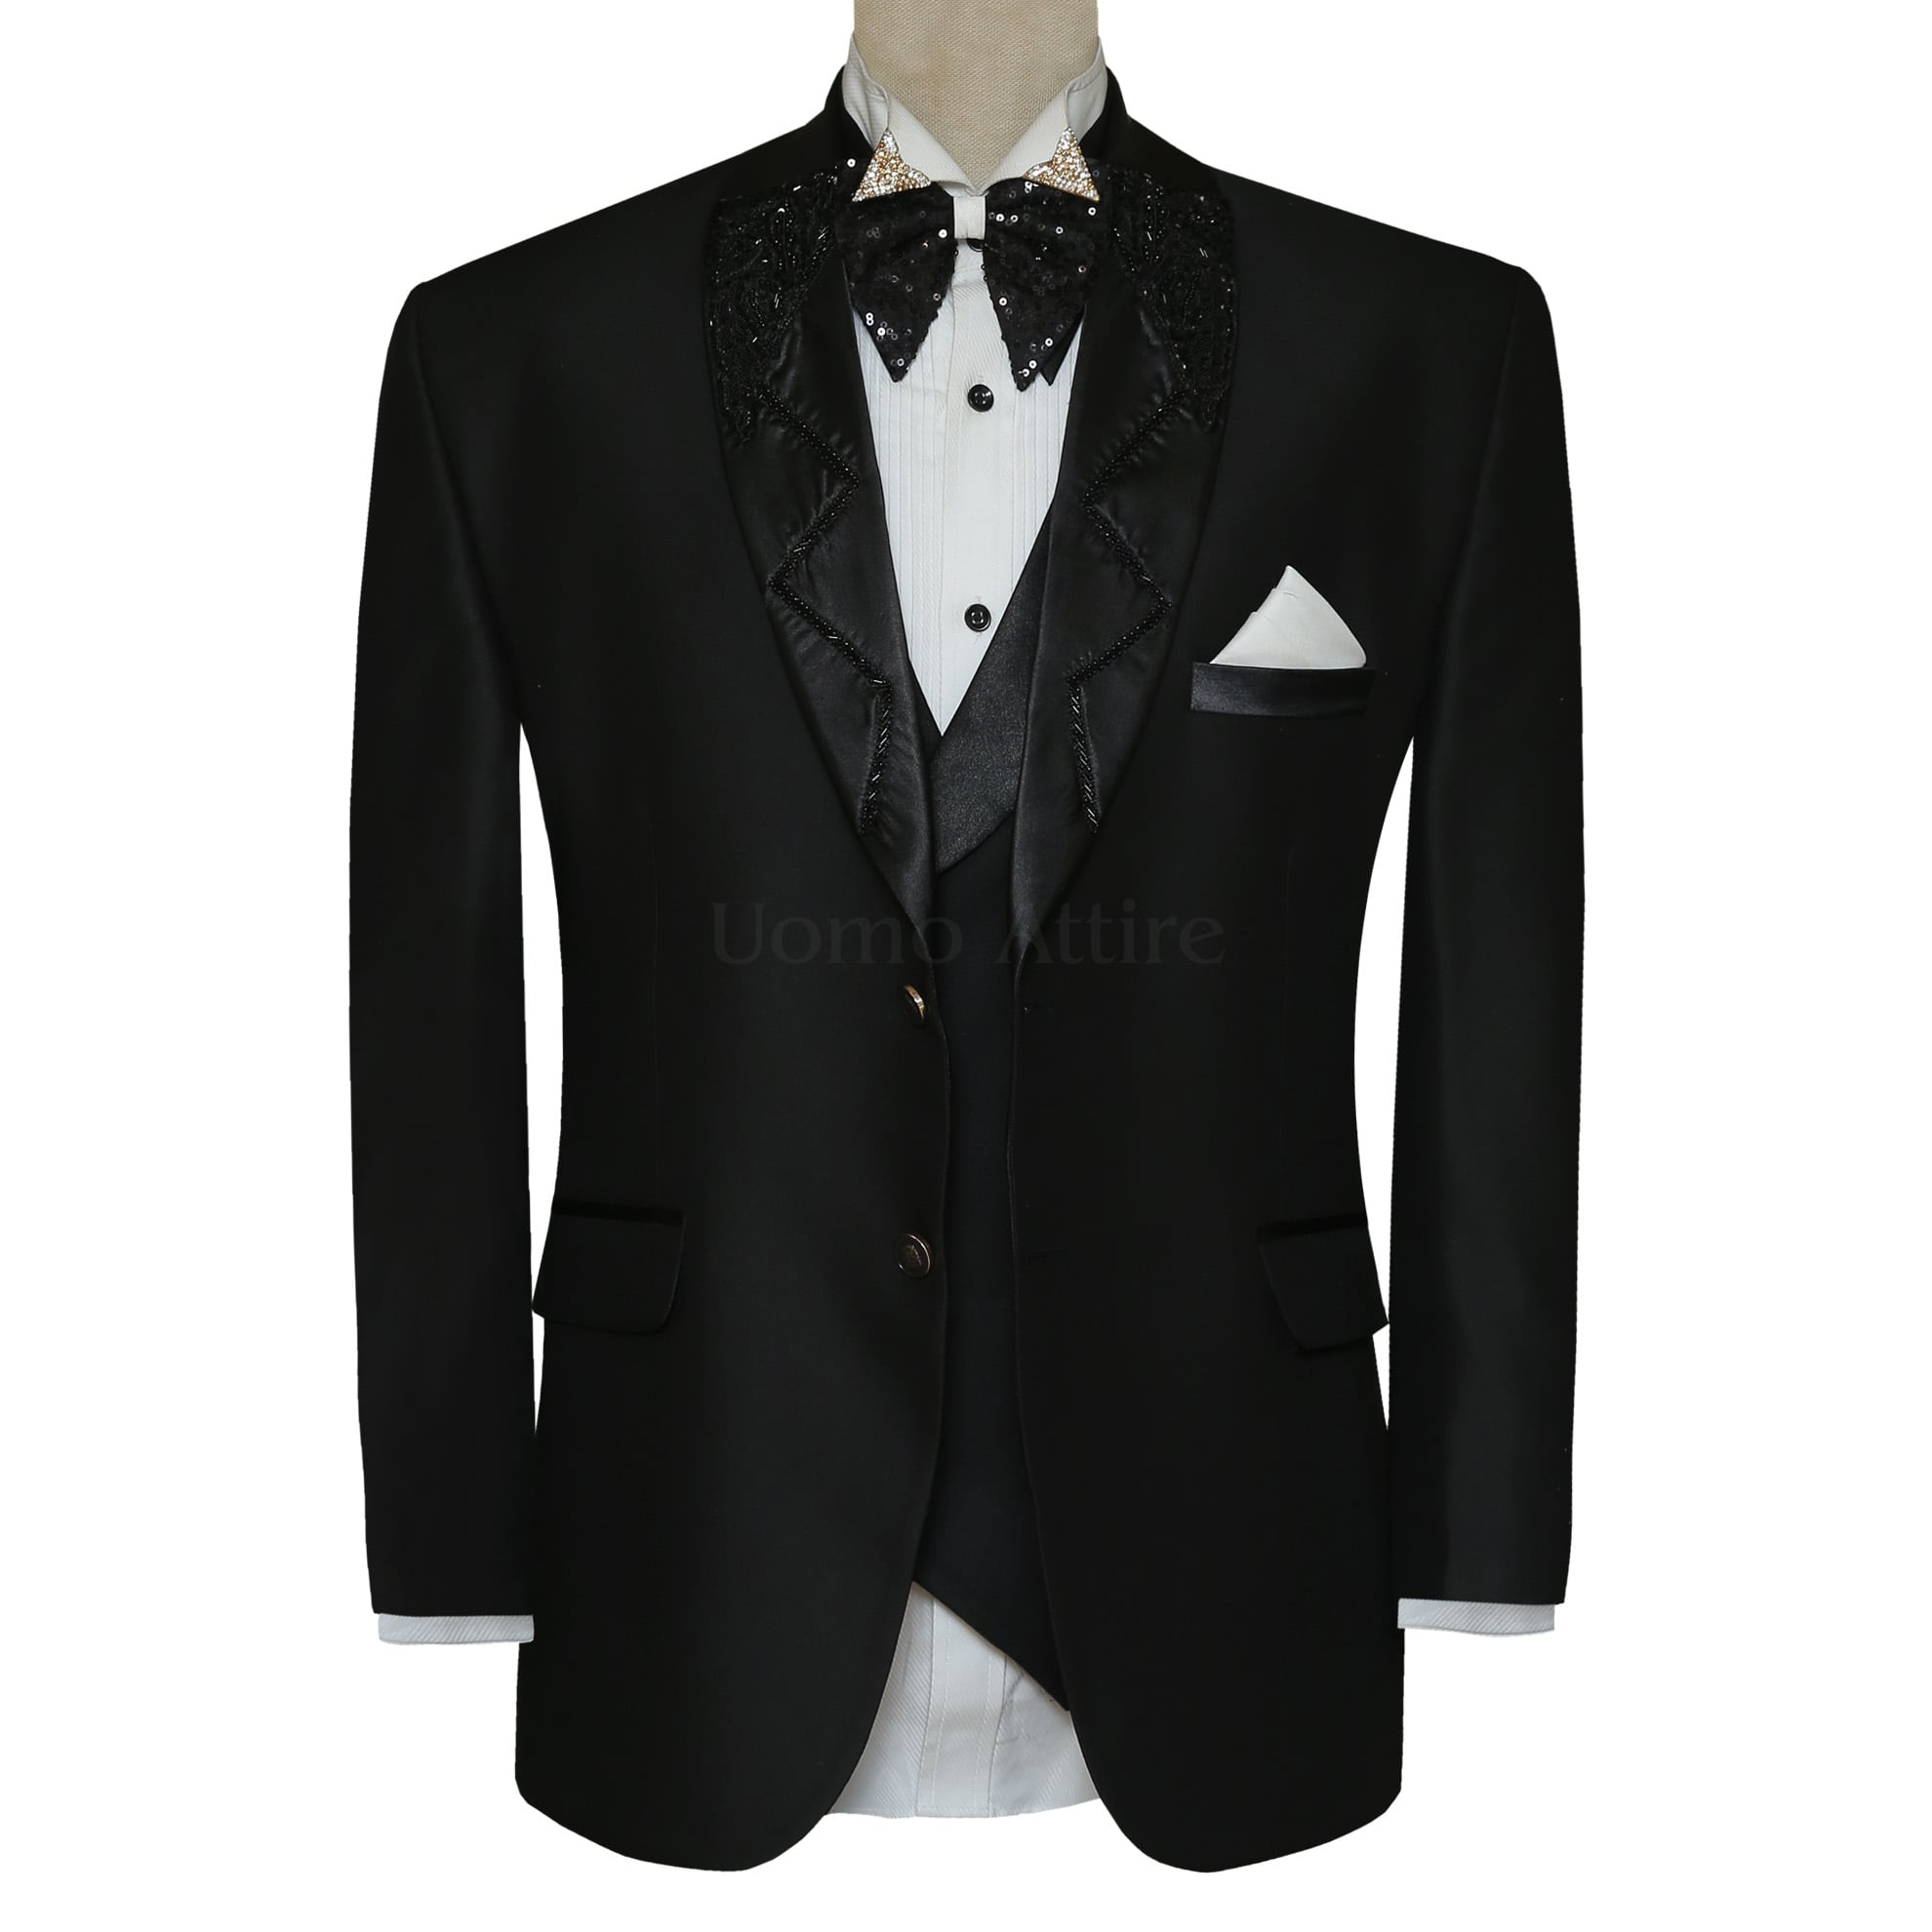 Black Groom Tuxedo Suit with Hand Embellished Satin Shawl Lapel